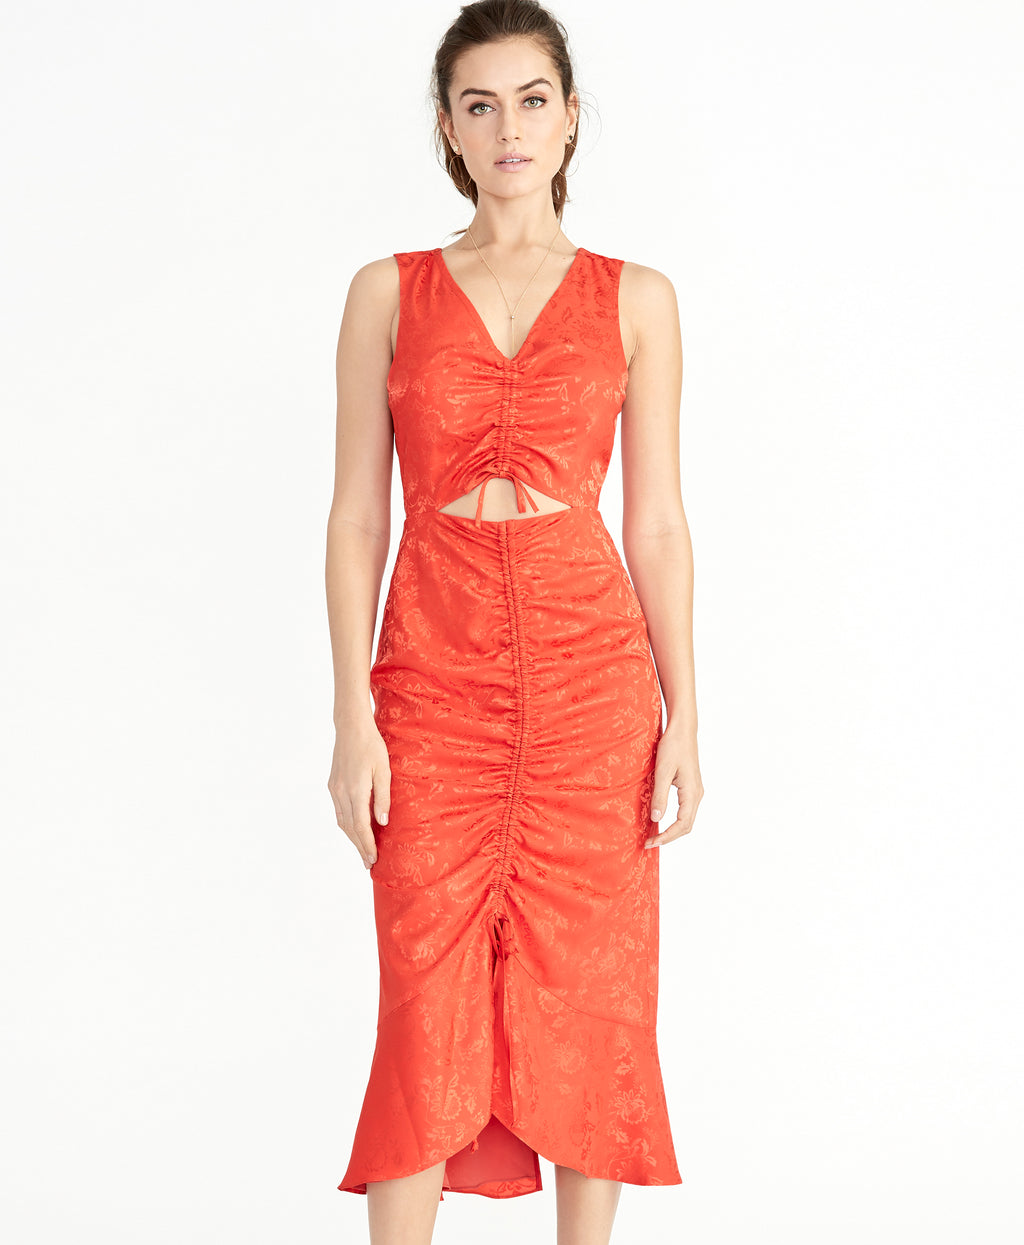 Shiloh Dress | Neon Tiger Lily